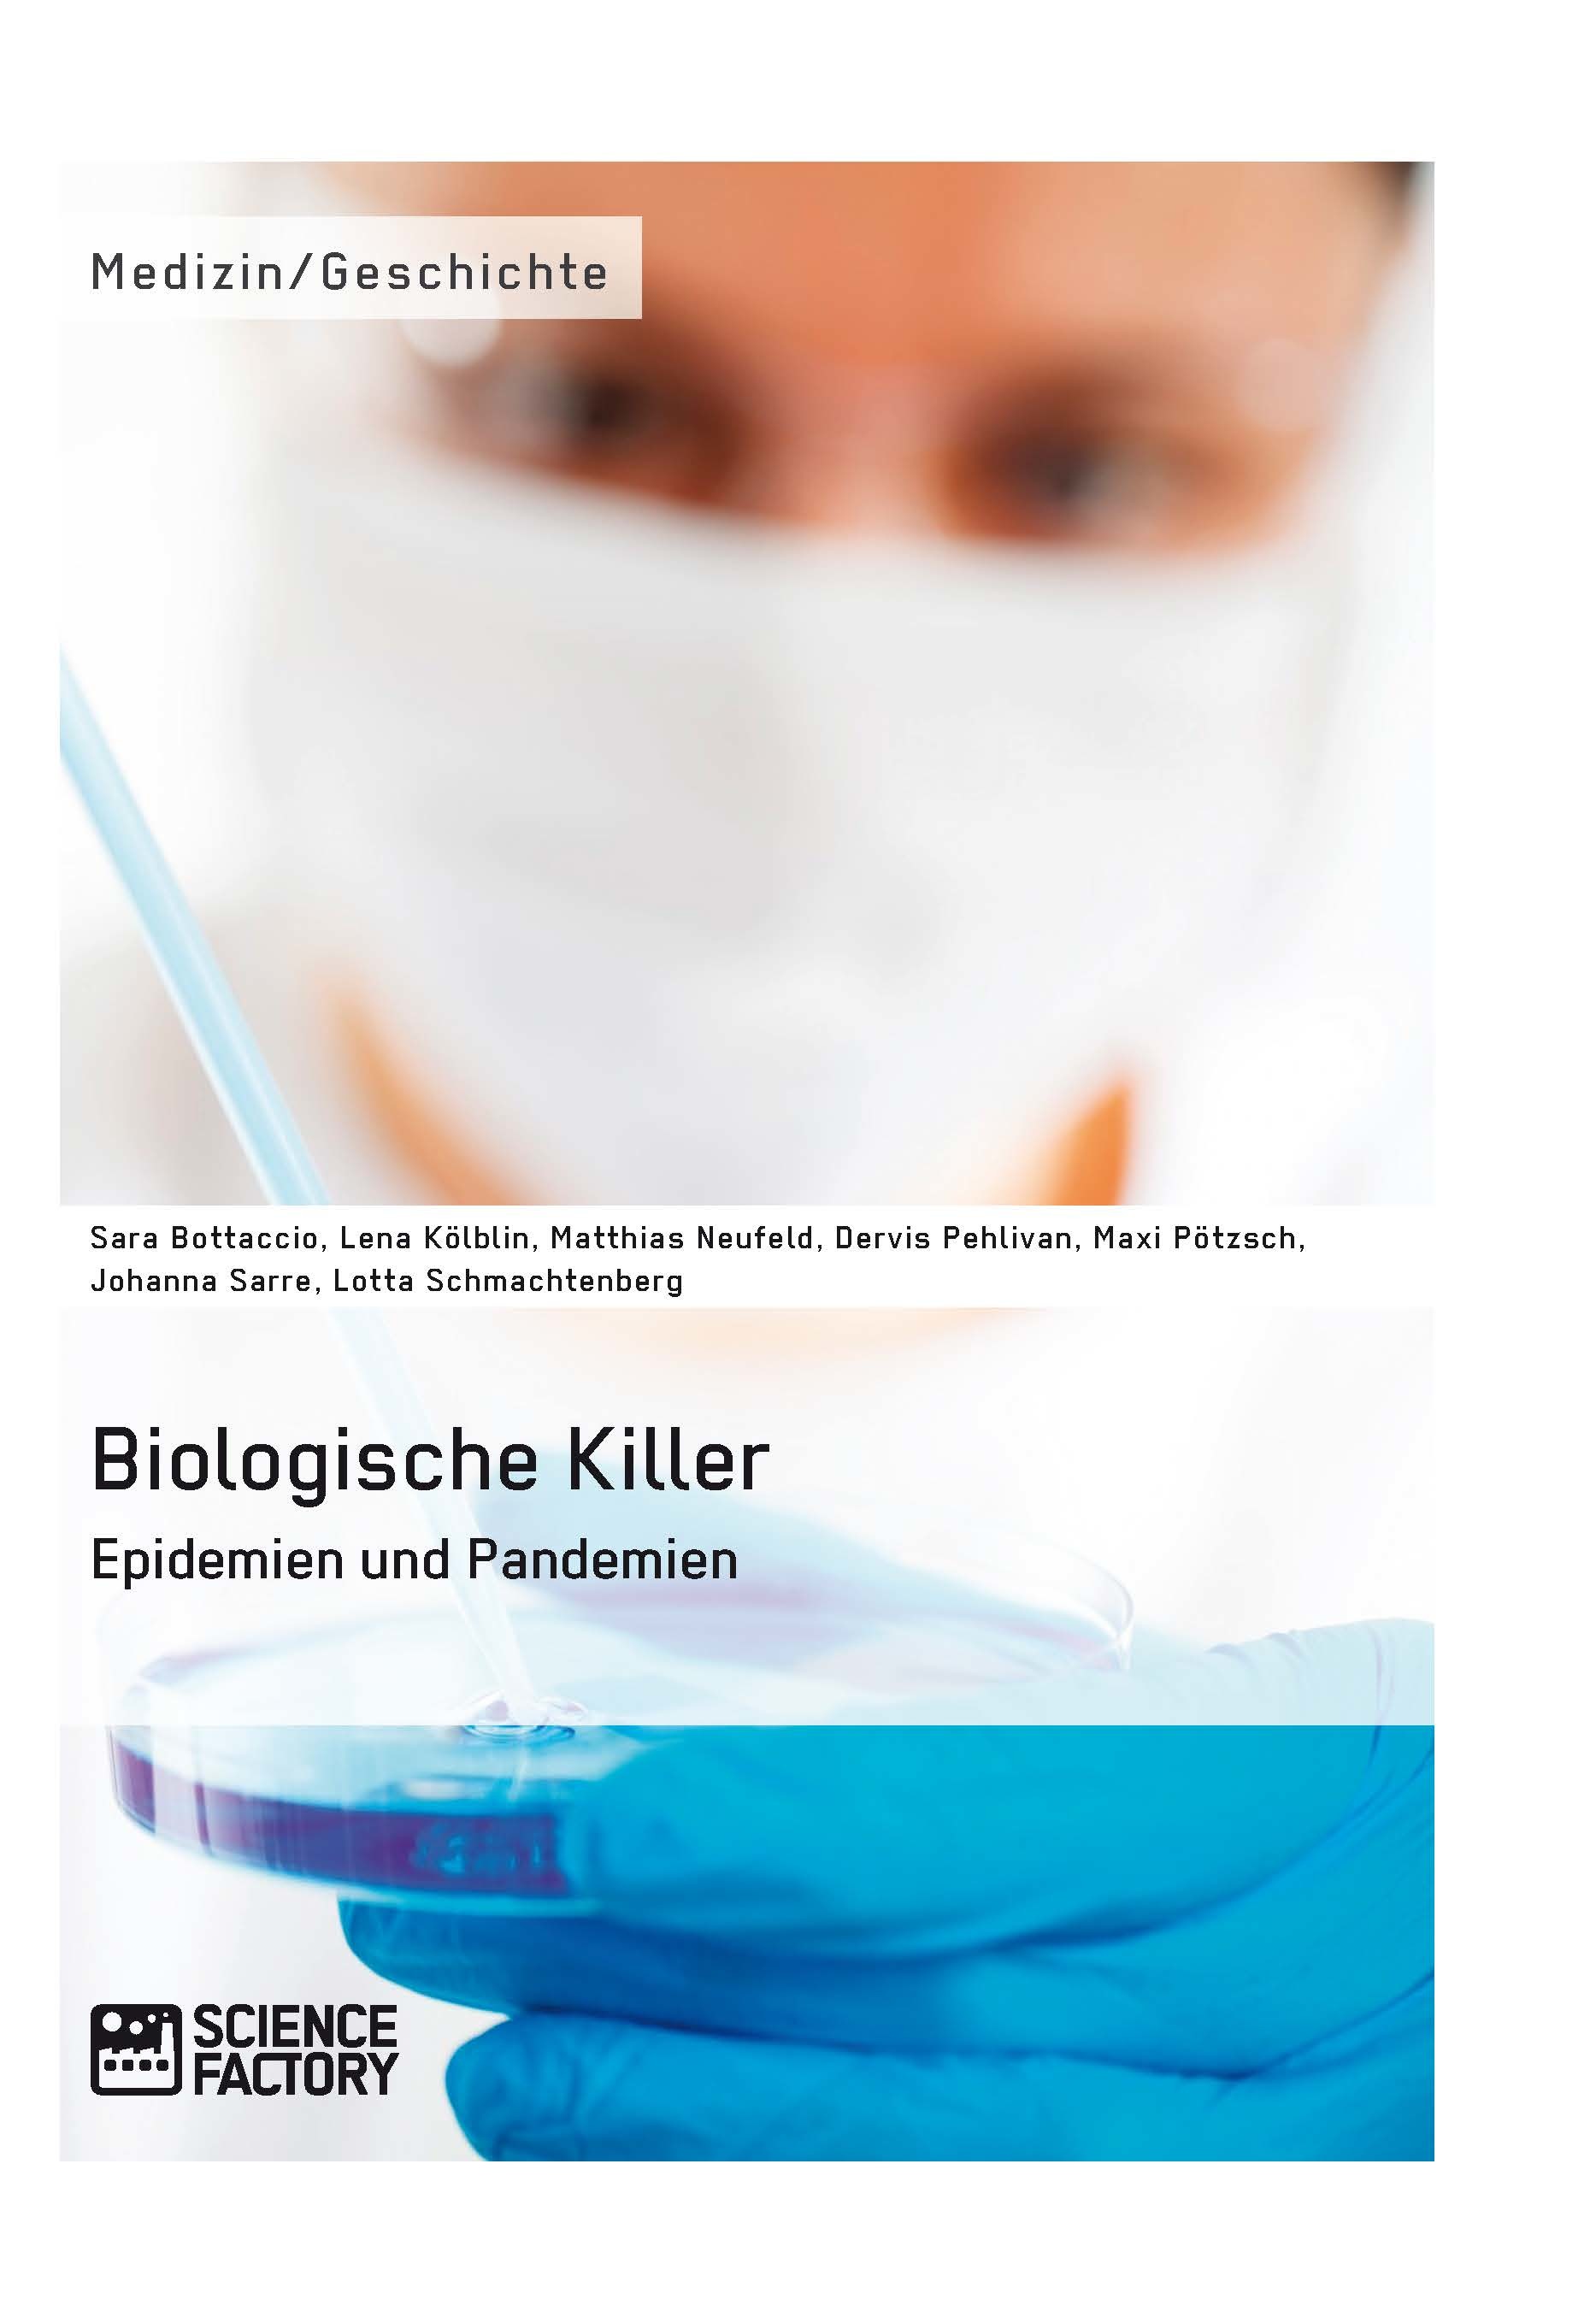 Titre: Biologische Killer. Epidemien und Pandemien